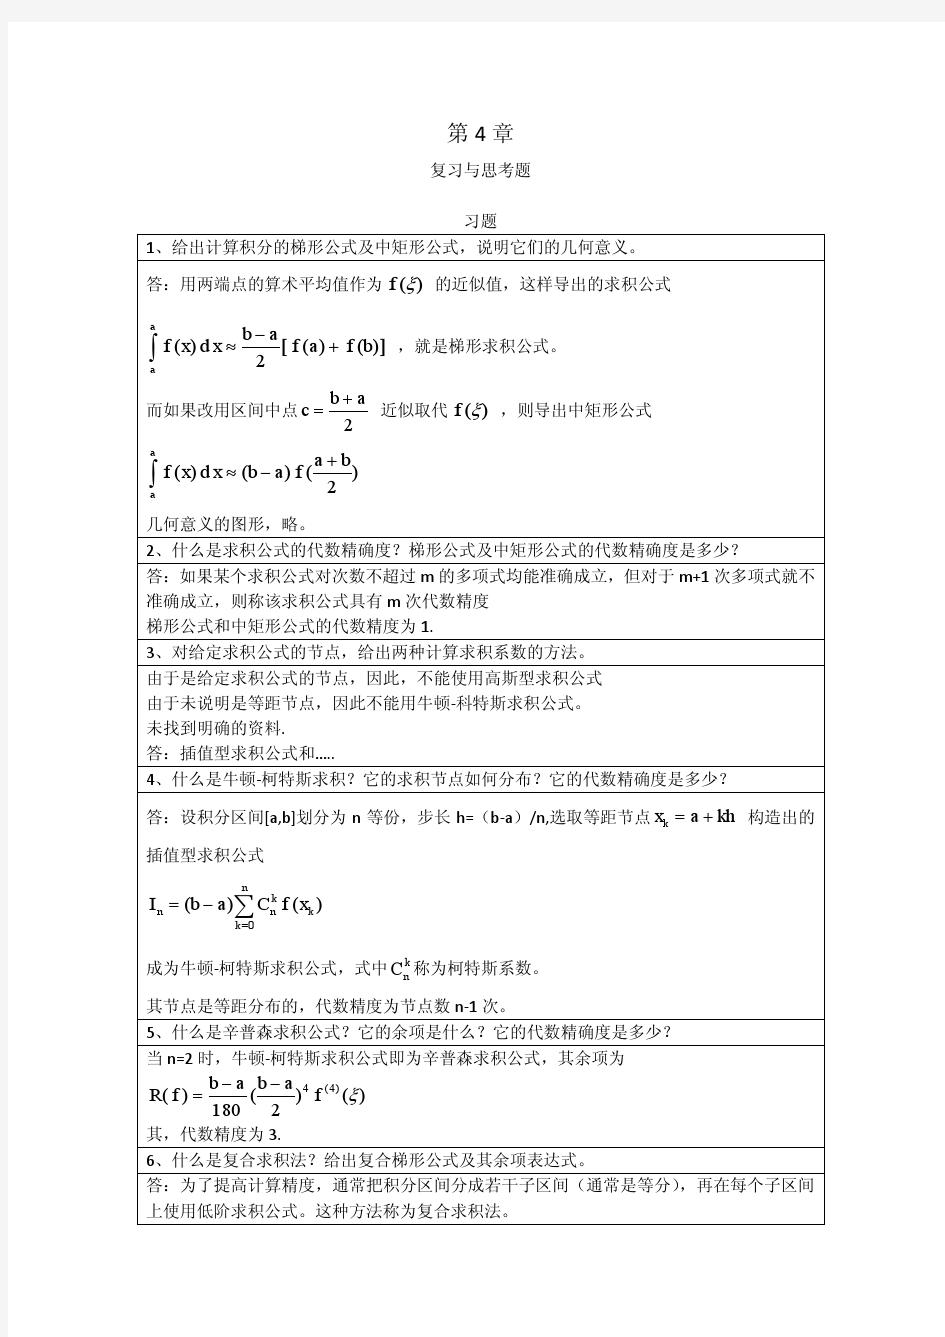 李庆扬-数值分析第五版第4章习题答案(20130714)